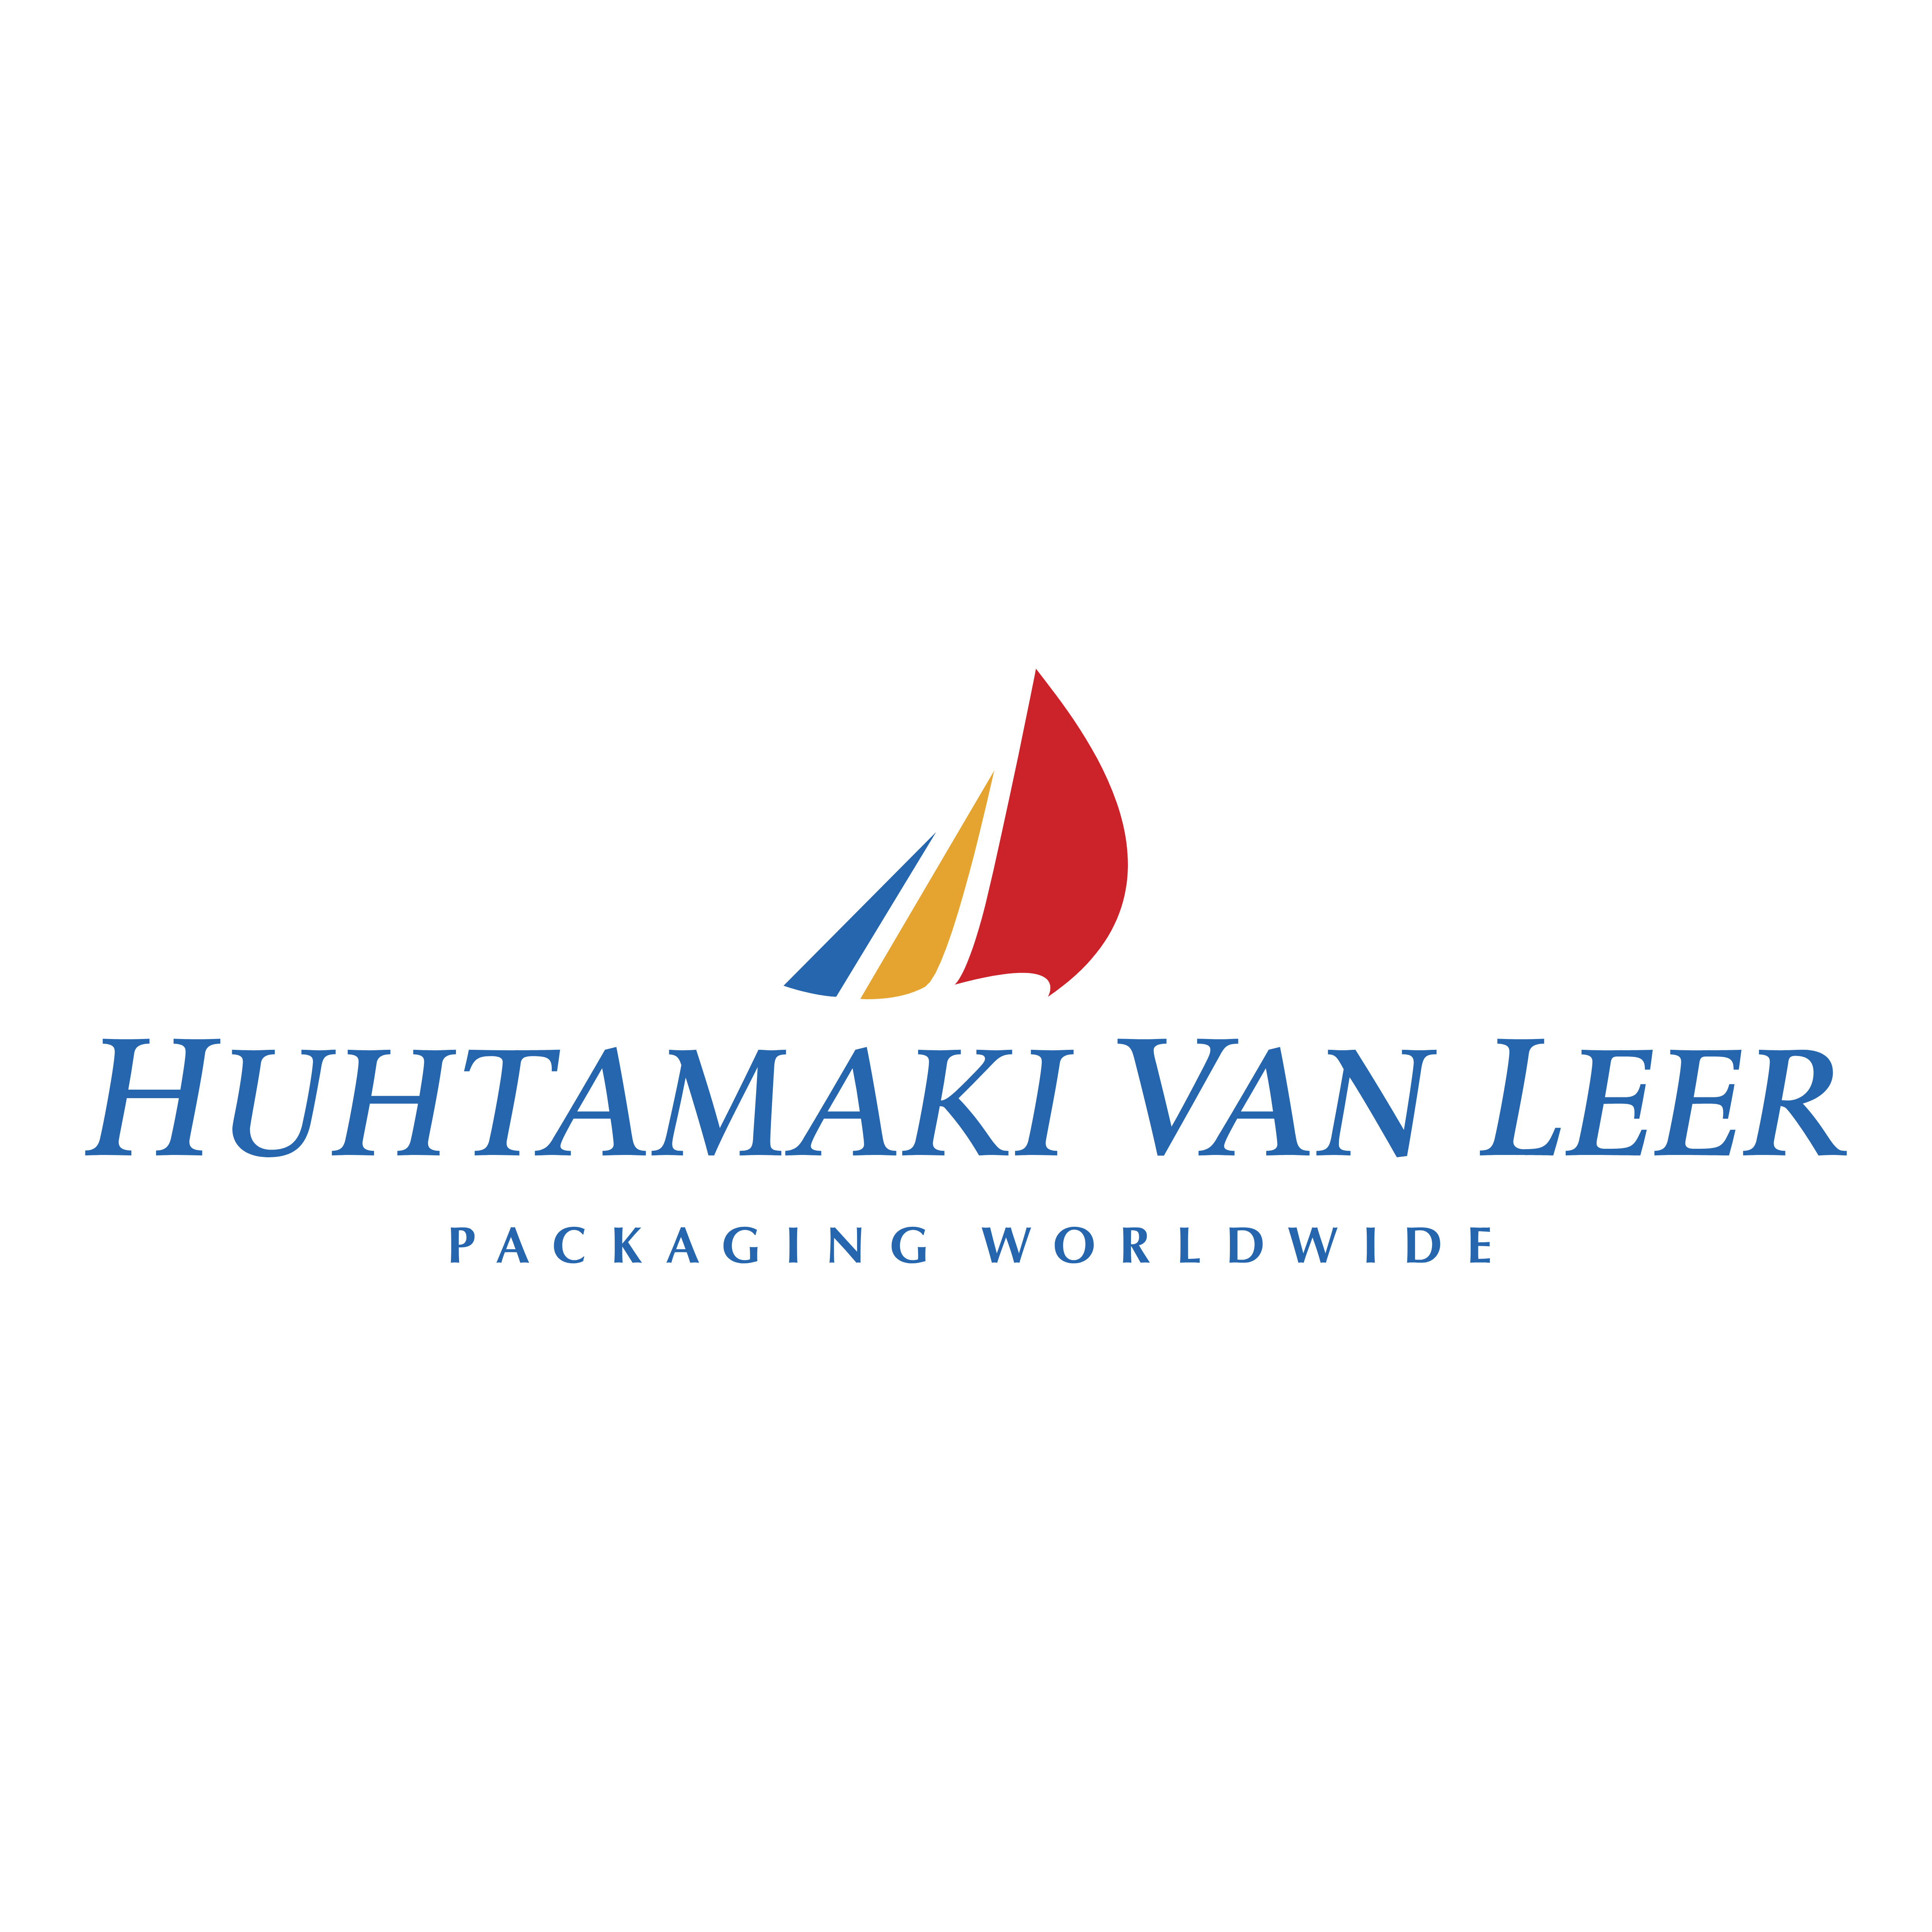 Leer Logo - Van Leer – Logos Download